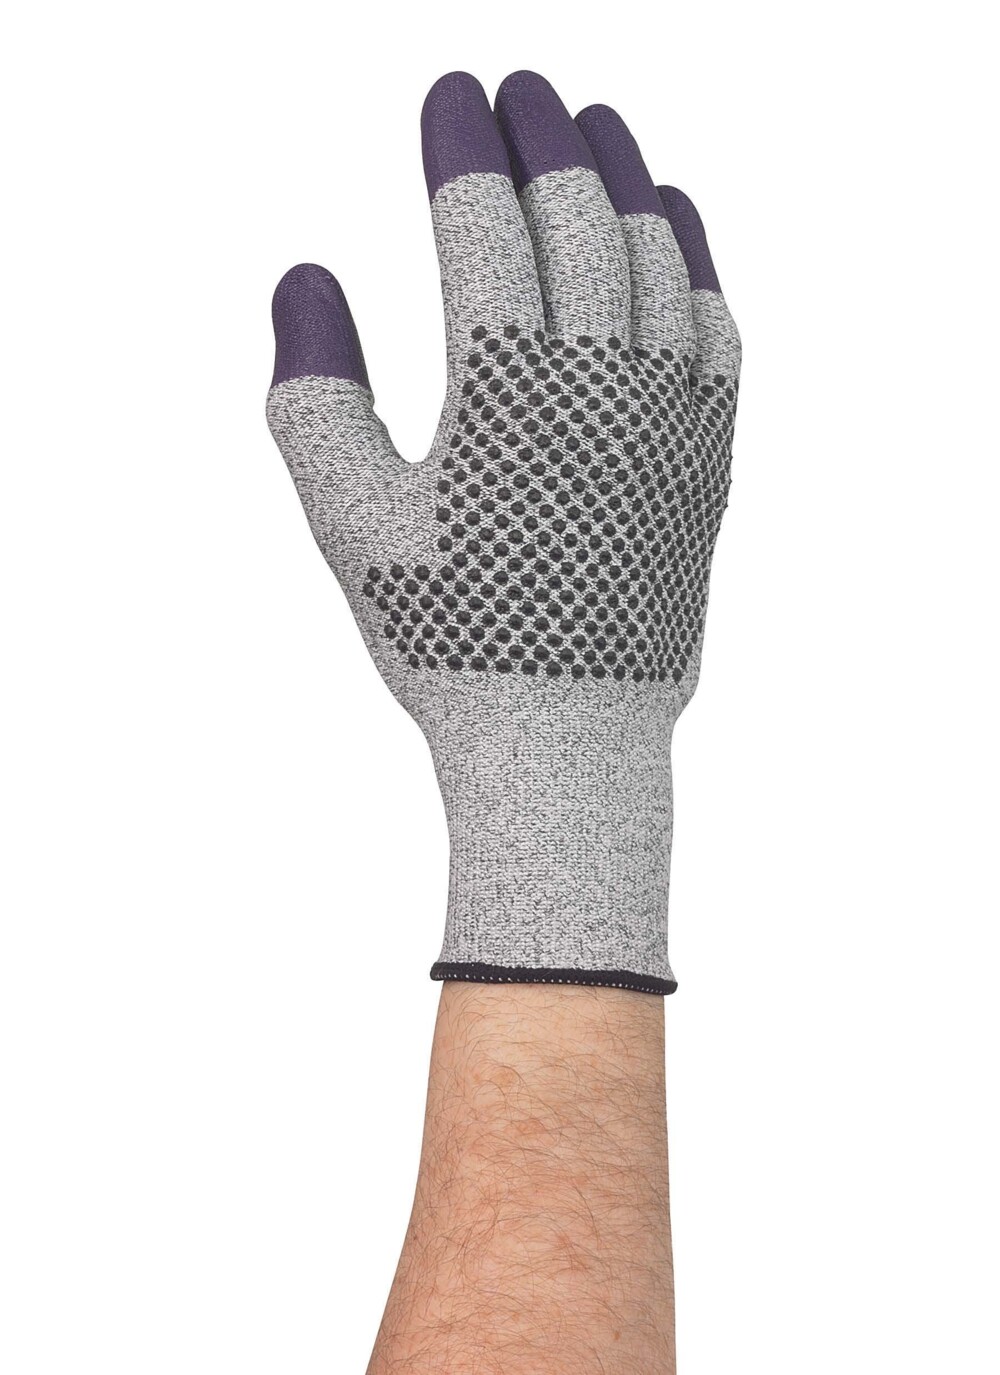 KleenGuard® G60 Endurapro™ Dual Grip™ violette Nitrilhandschuhe 97434 Grau und Violett, 11, 1x12 (12 Handschuhe) - 97434